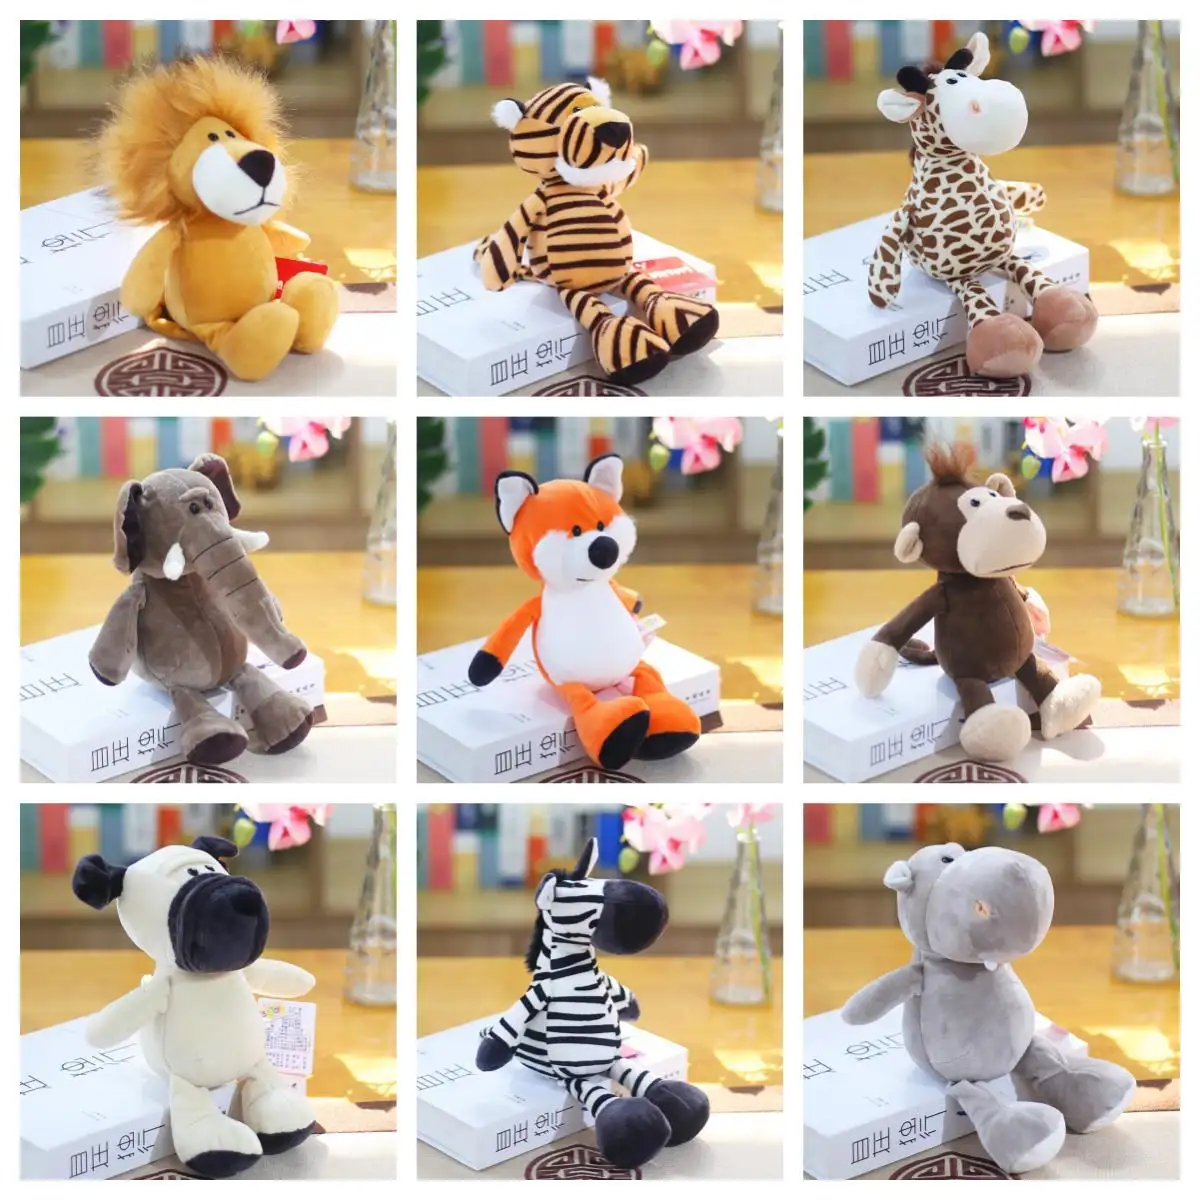 Superventas lindo elefante de dibujos animados mono jirafa Tigre León peluche zoológico Animal juguetes de peluche para niños